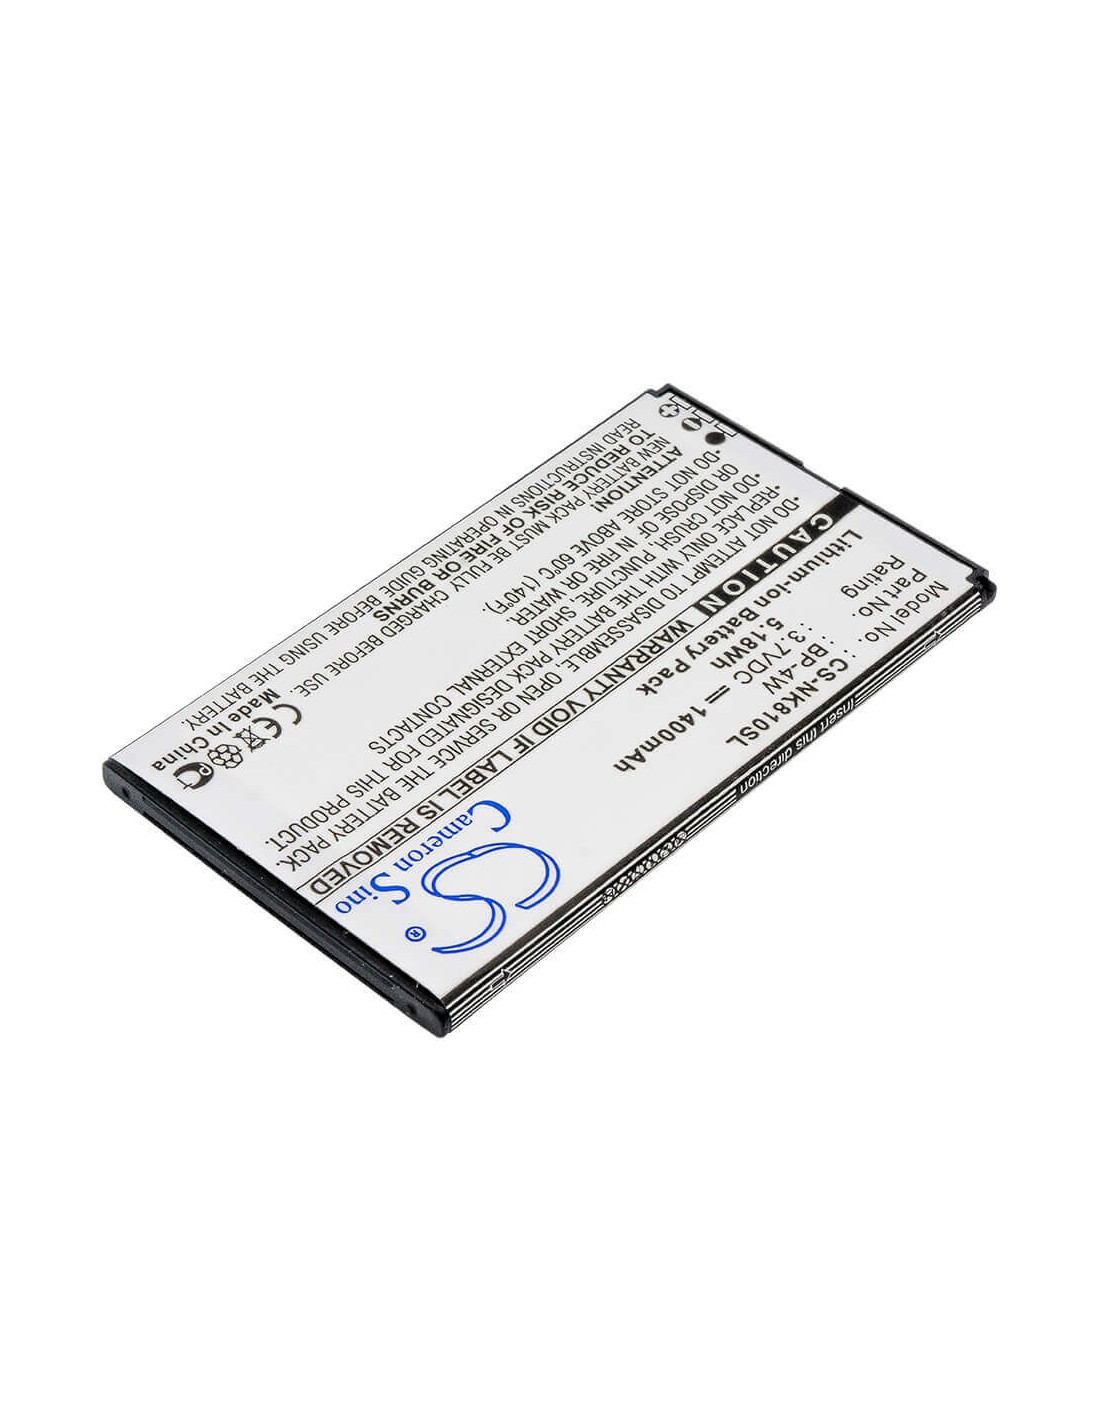 Battery for Nokia Lumia 810, Lumia 822 3.7V, 1400mAh - 5.18Wh